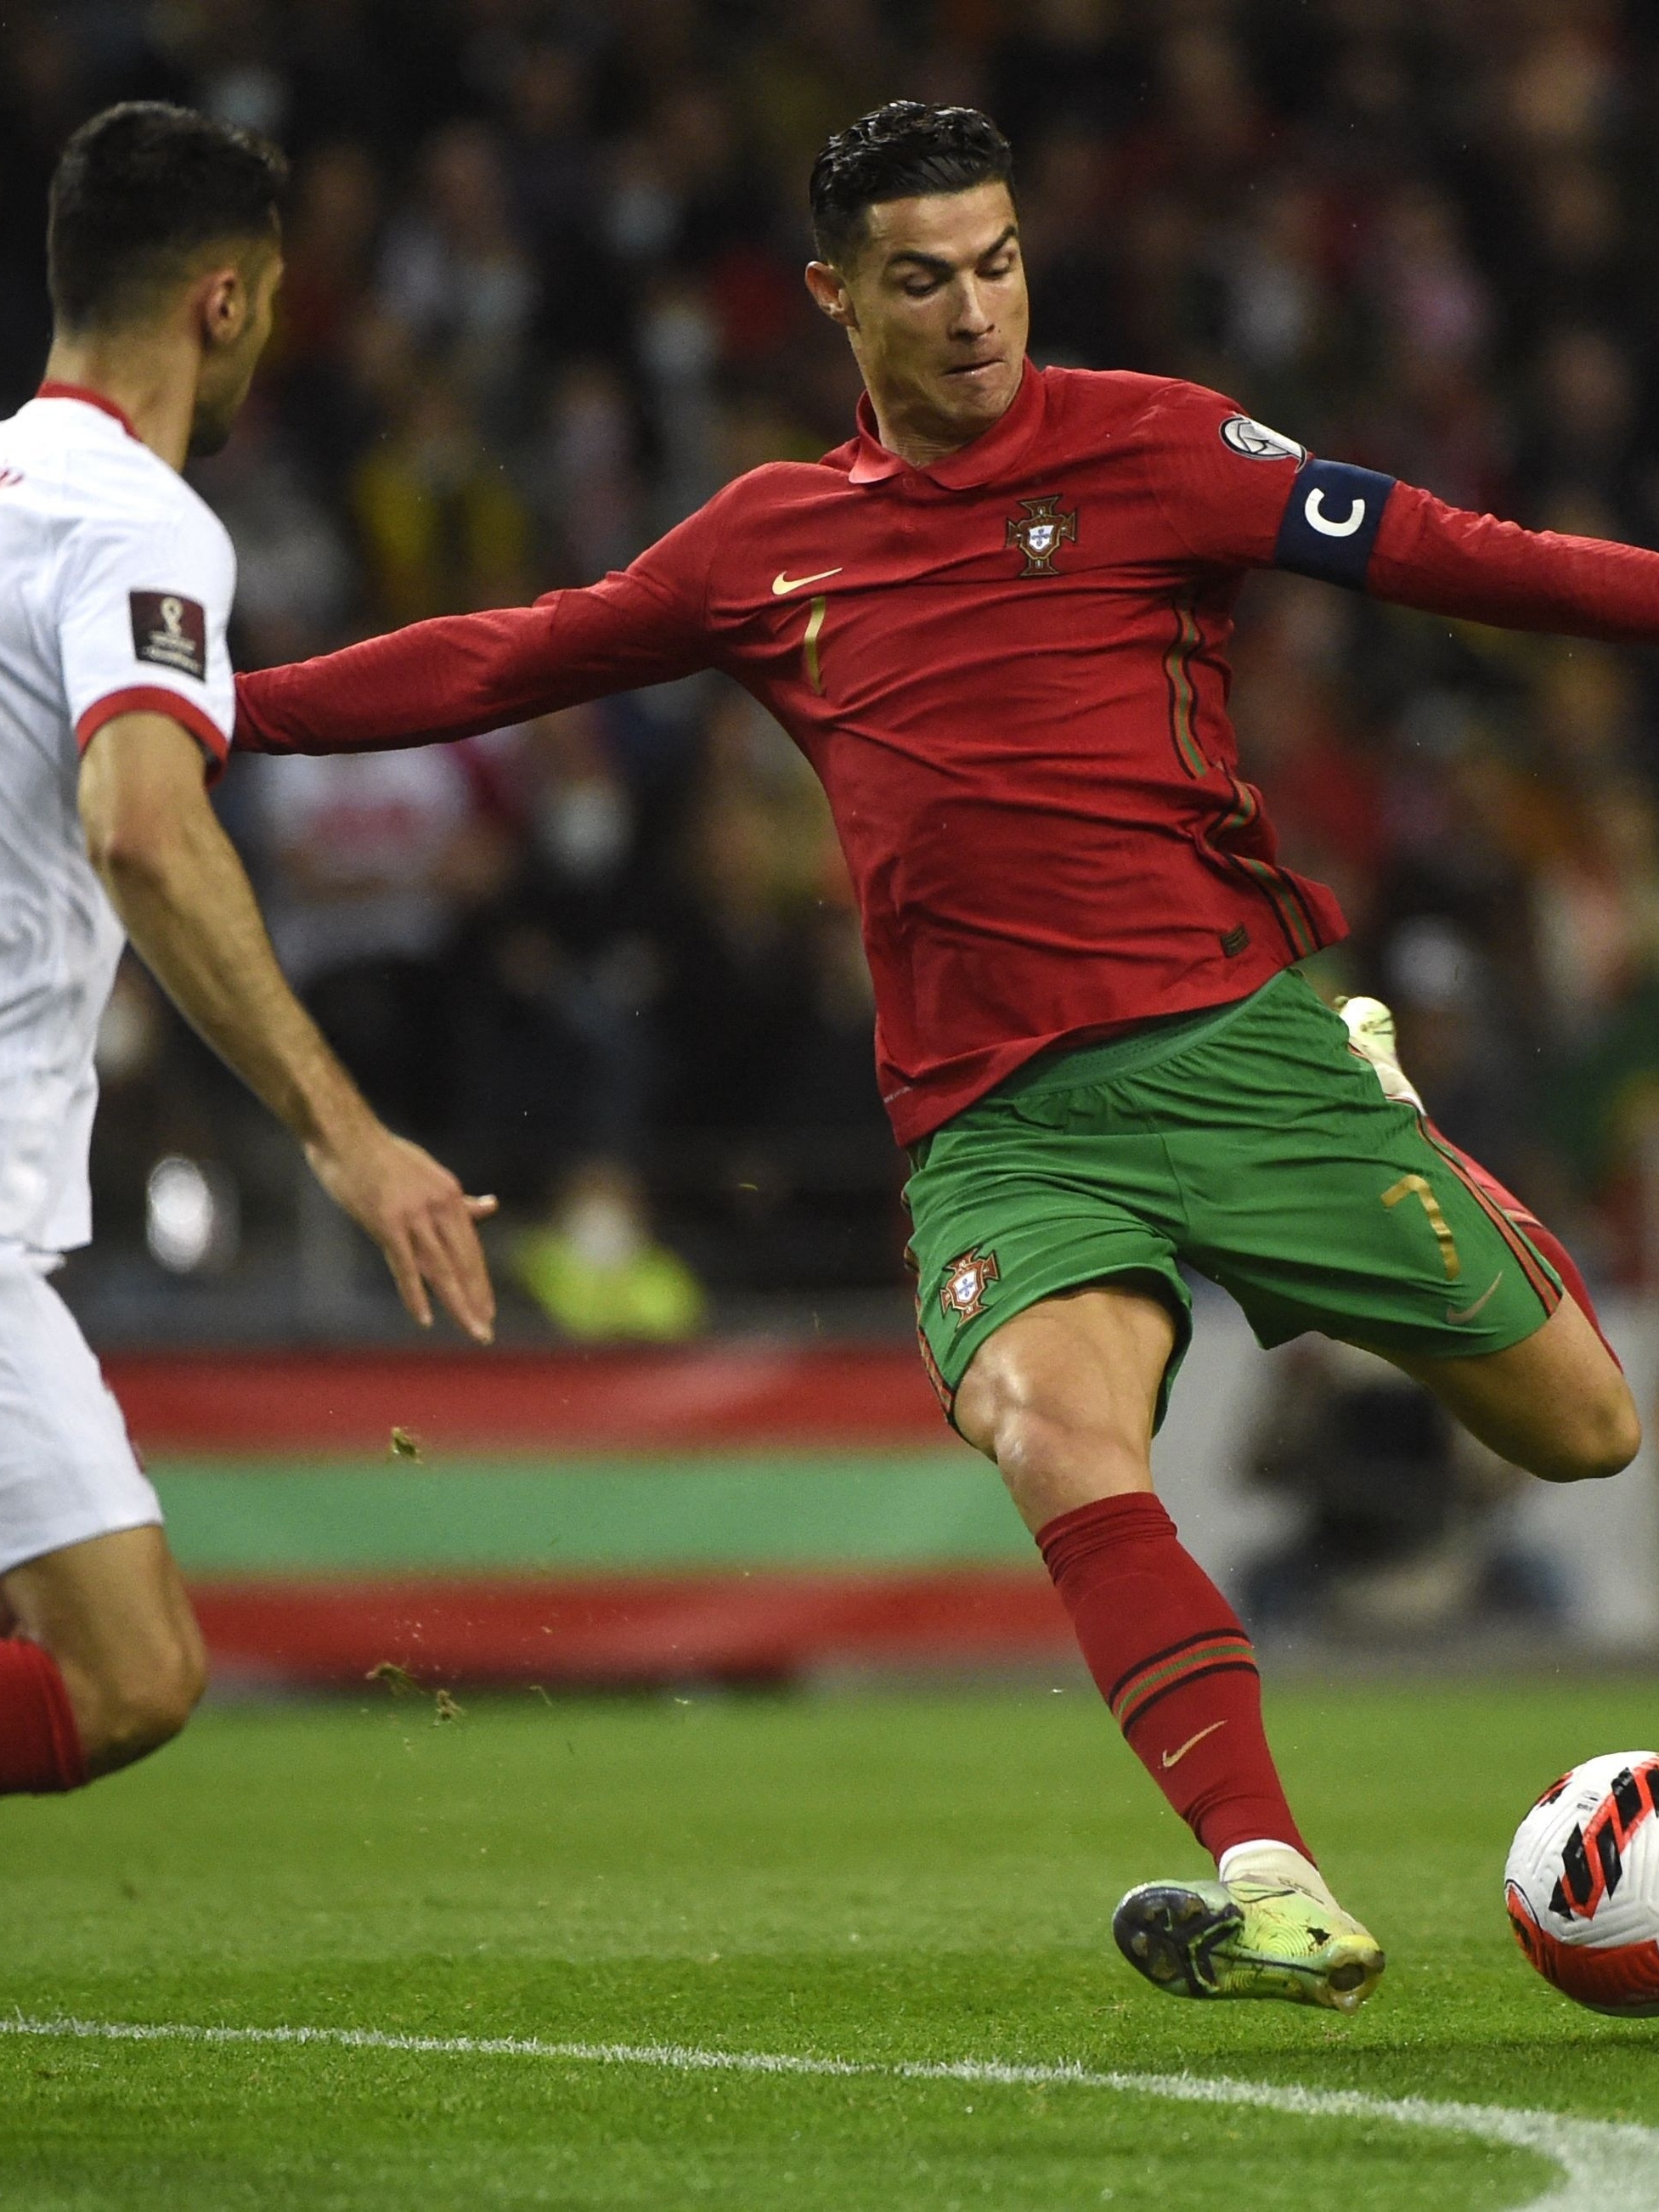 Copa do Mundo: Cristiano Ronaldo já está perto de garantir artilharia